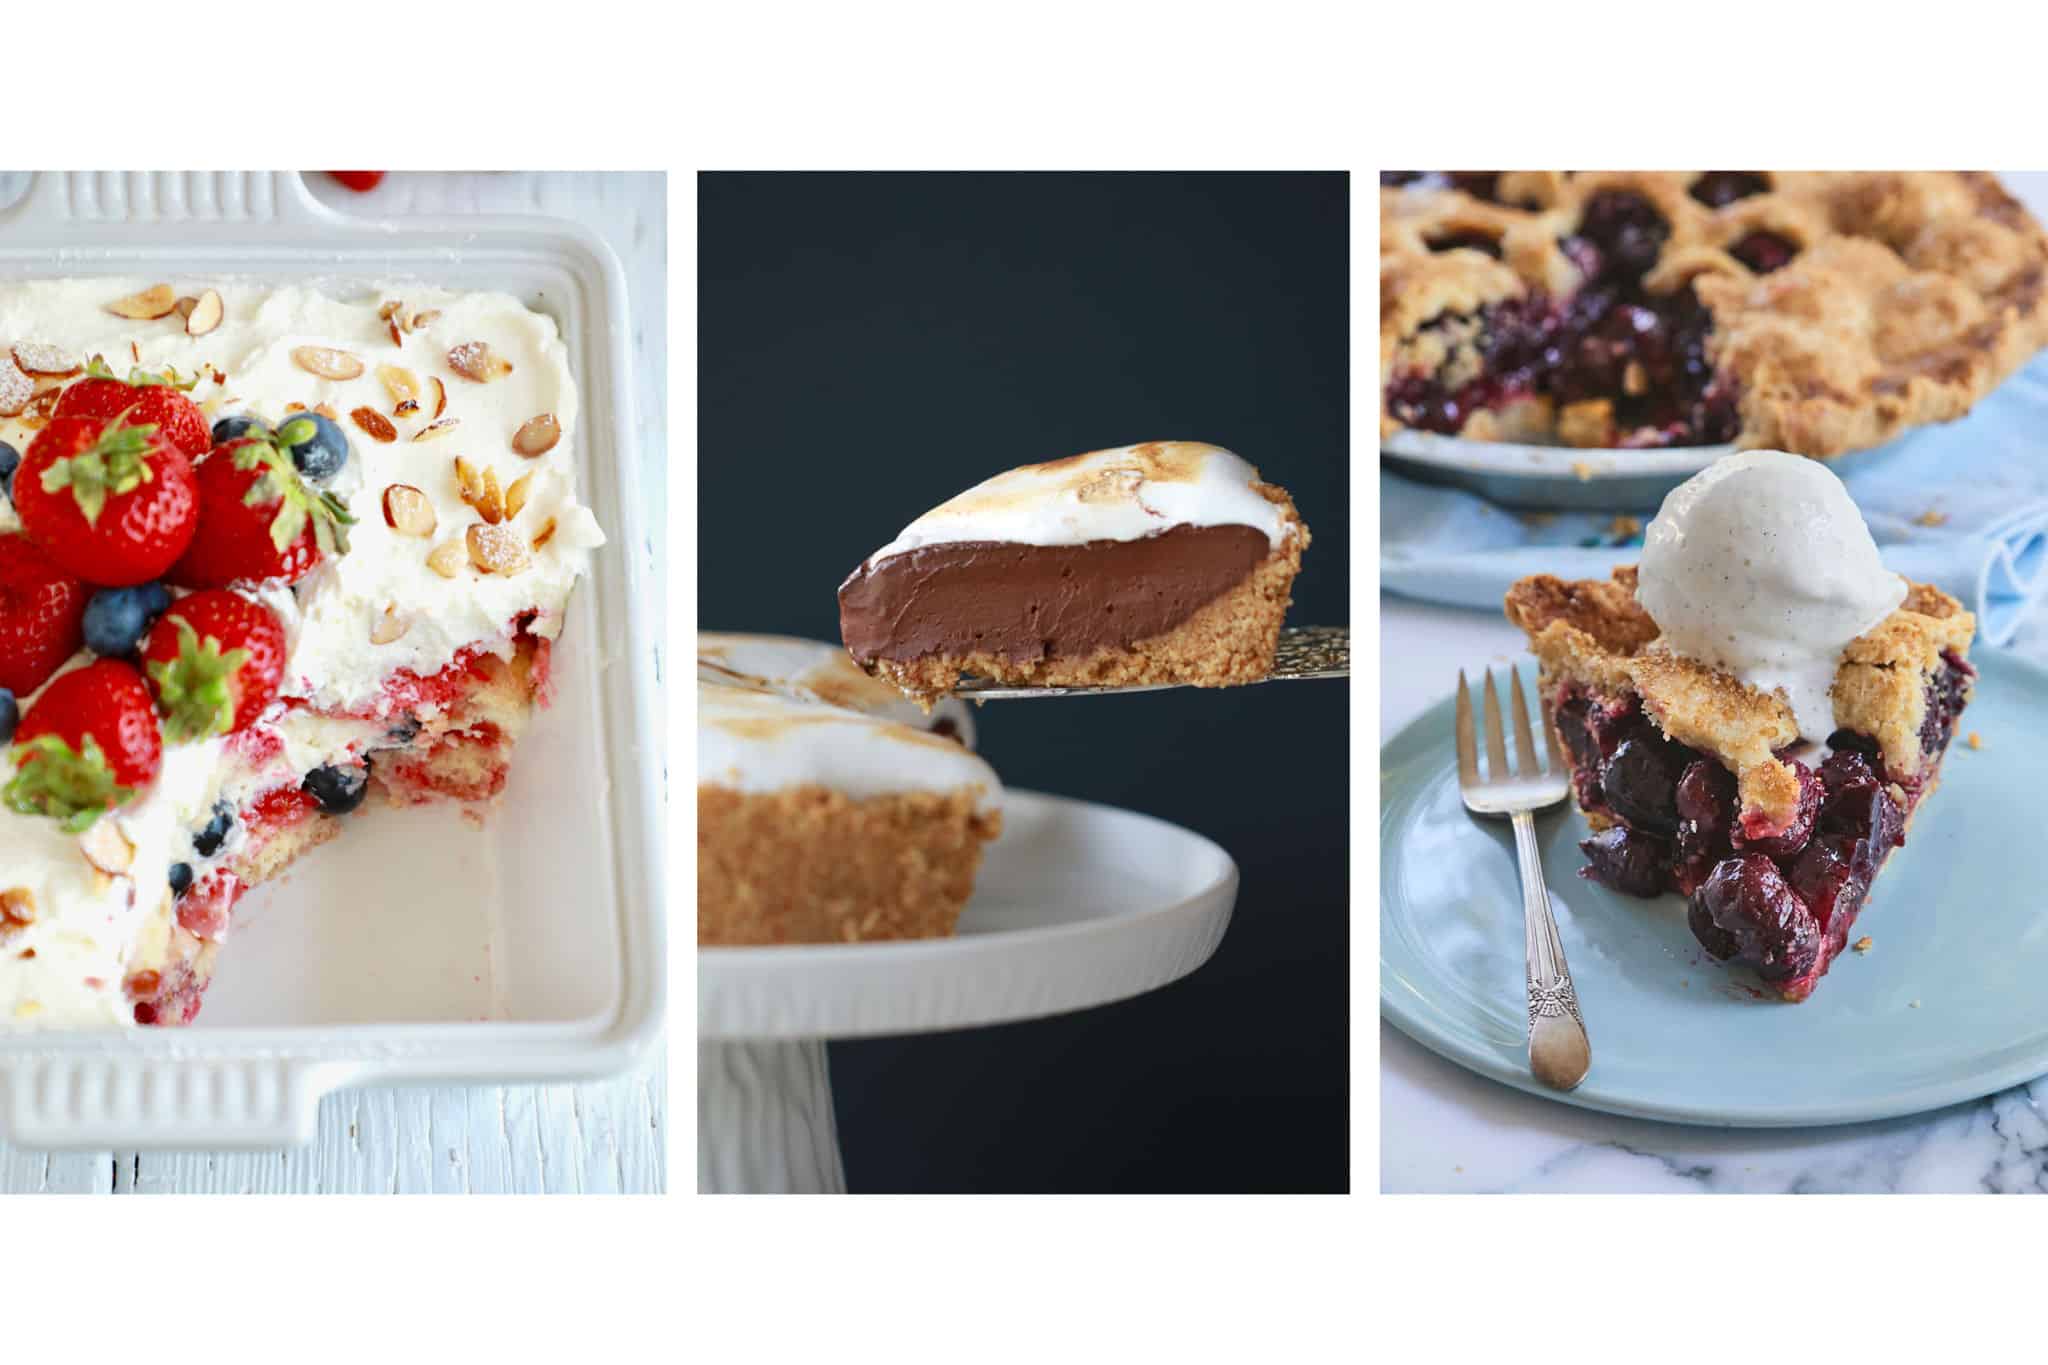 Tiramisu, smores pie, and cherry pie photos next to each other